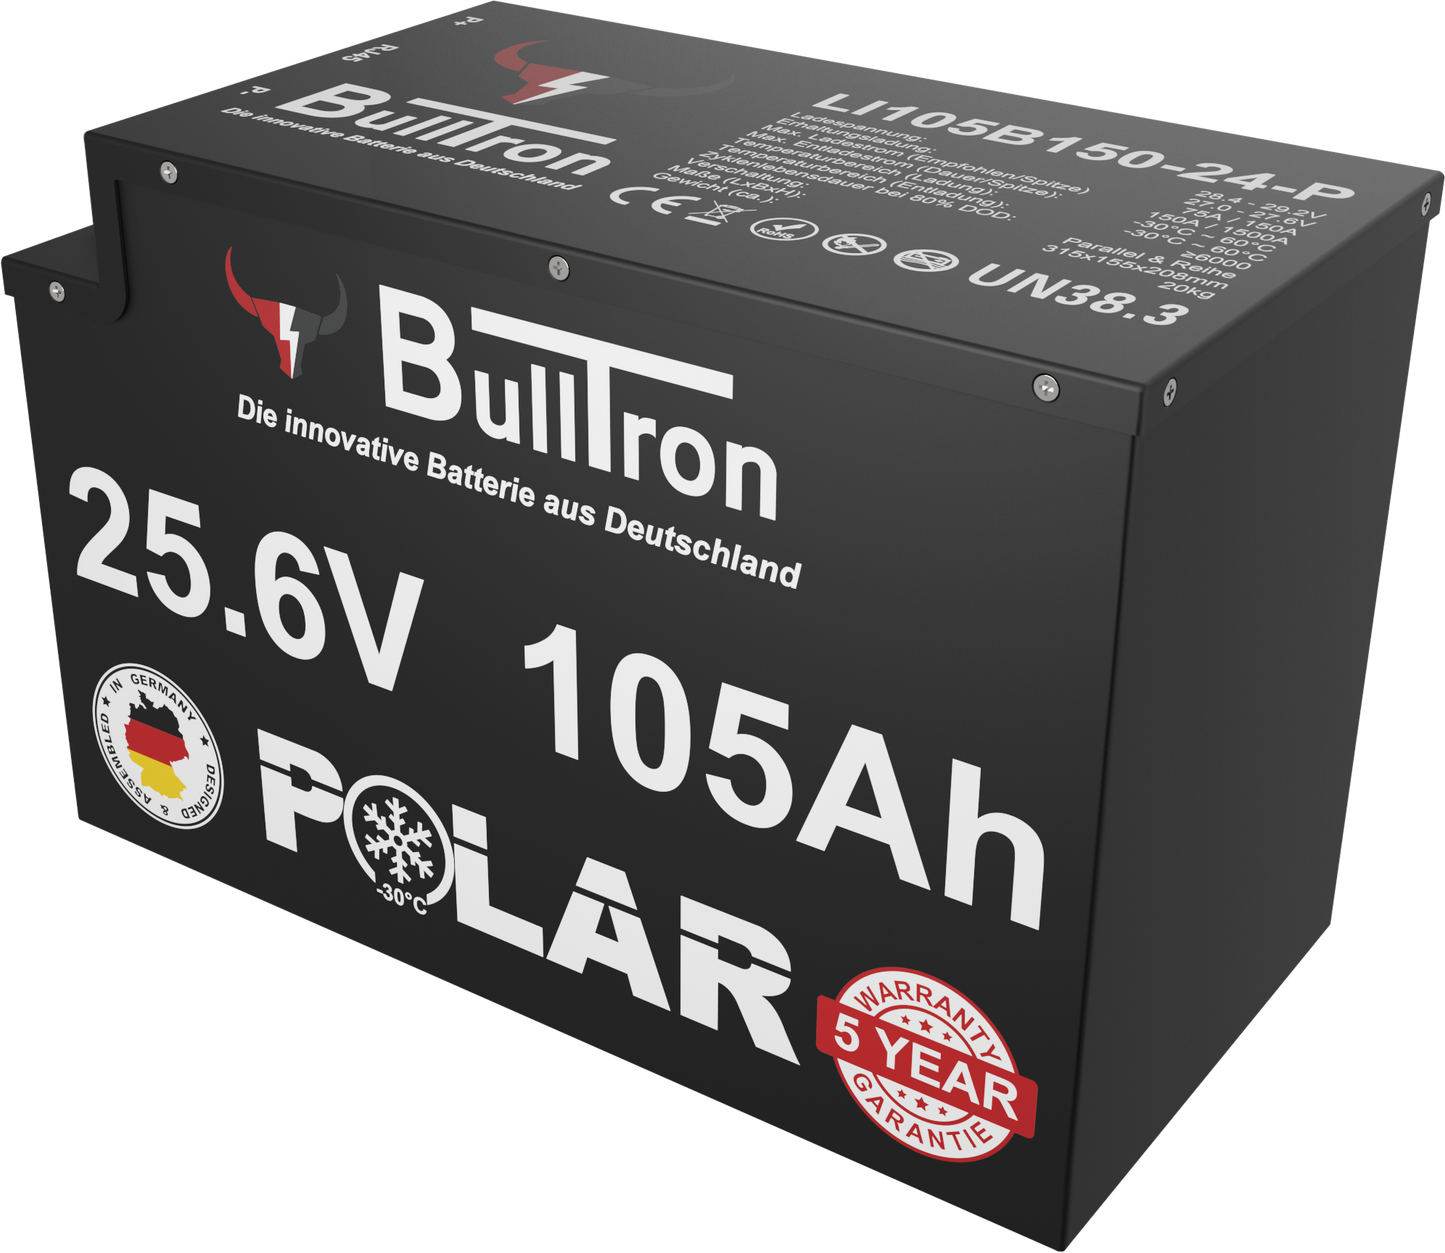 BullTron Polar 25,6V/105Ah incl. Smart BMS mit 150A Dauerstrom & Bluetooth App